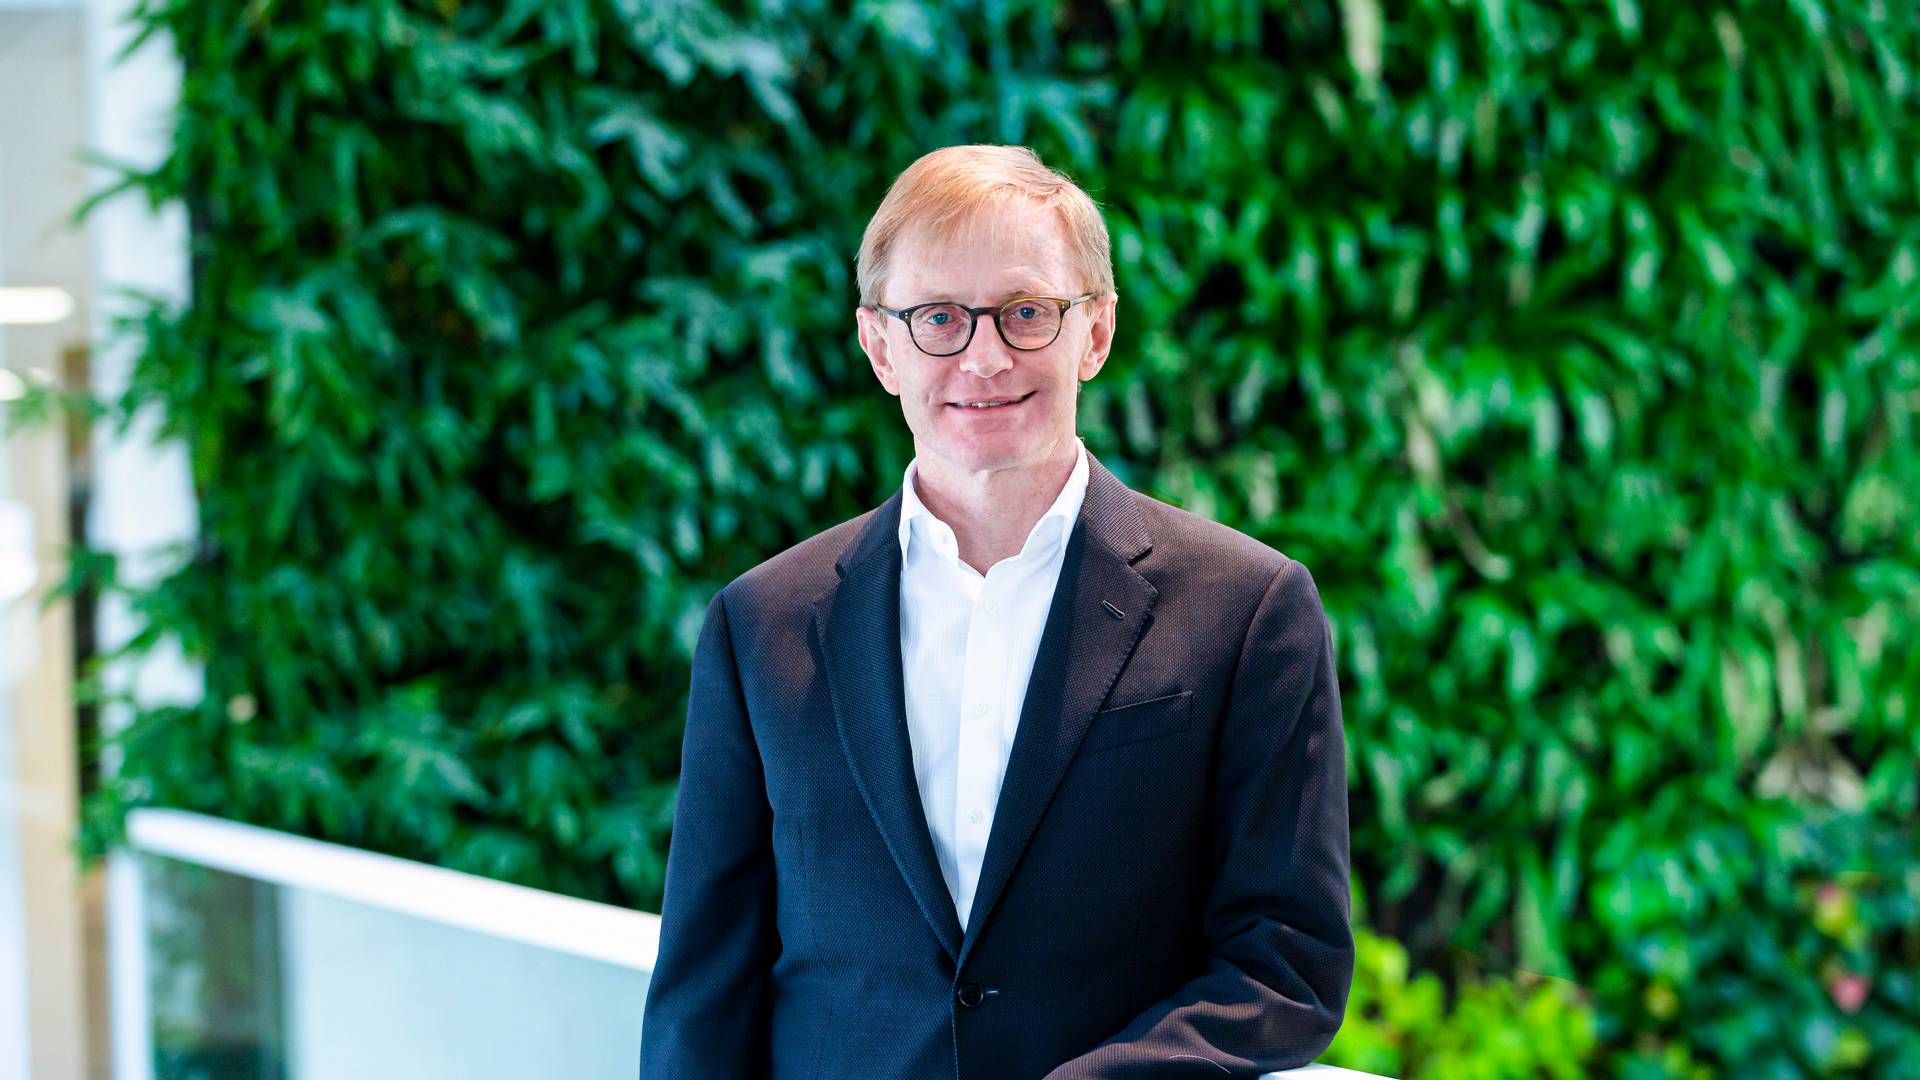 Niels Elbek er medstifter af Elbek & Vejrup, og han sidder i dag i bestyrelsen i selskabet. Han har tidligere været adm. direktør, men fratrådte i maj 2020. | Foto: Elbek & Vejrup/pr